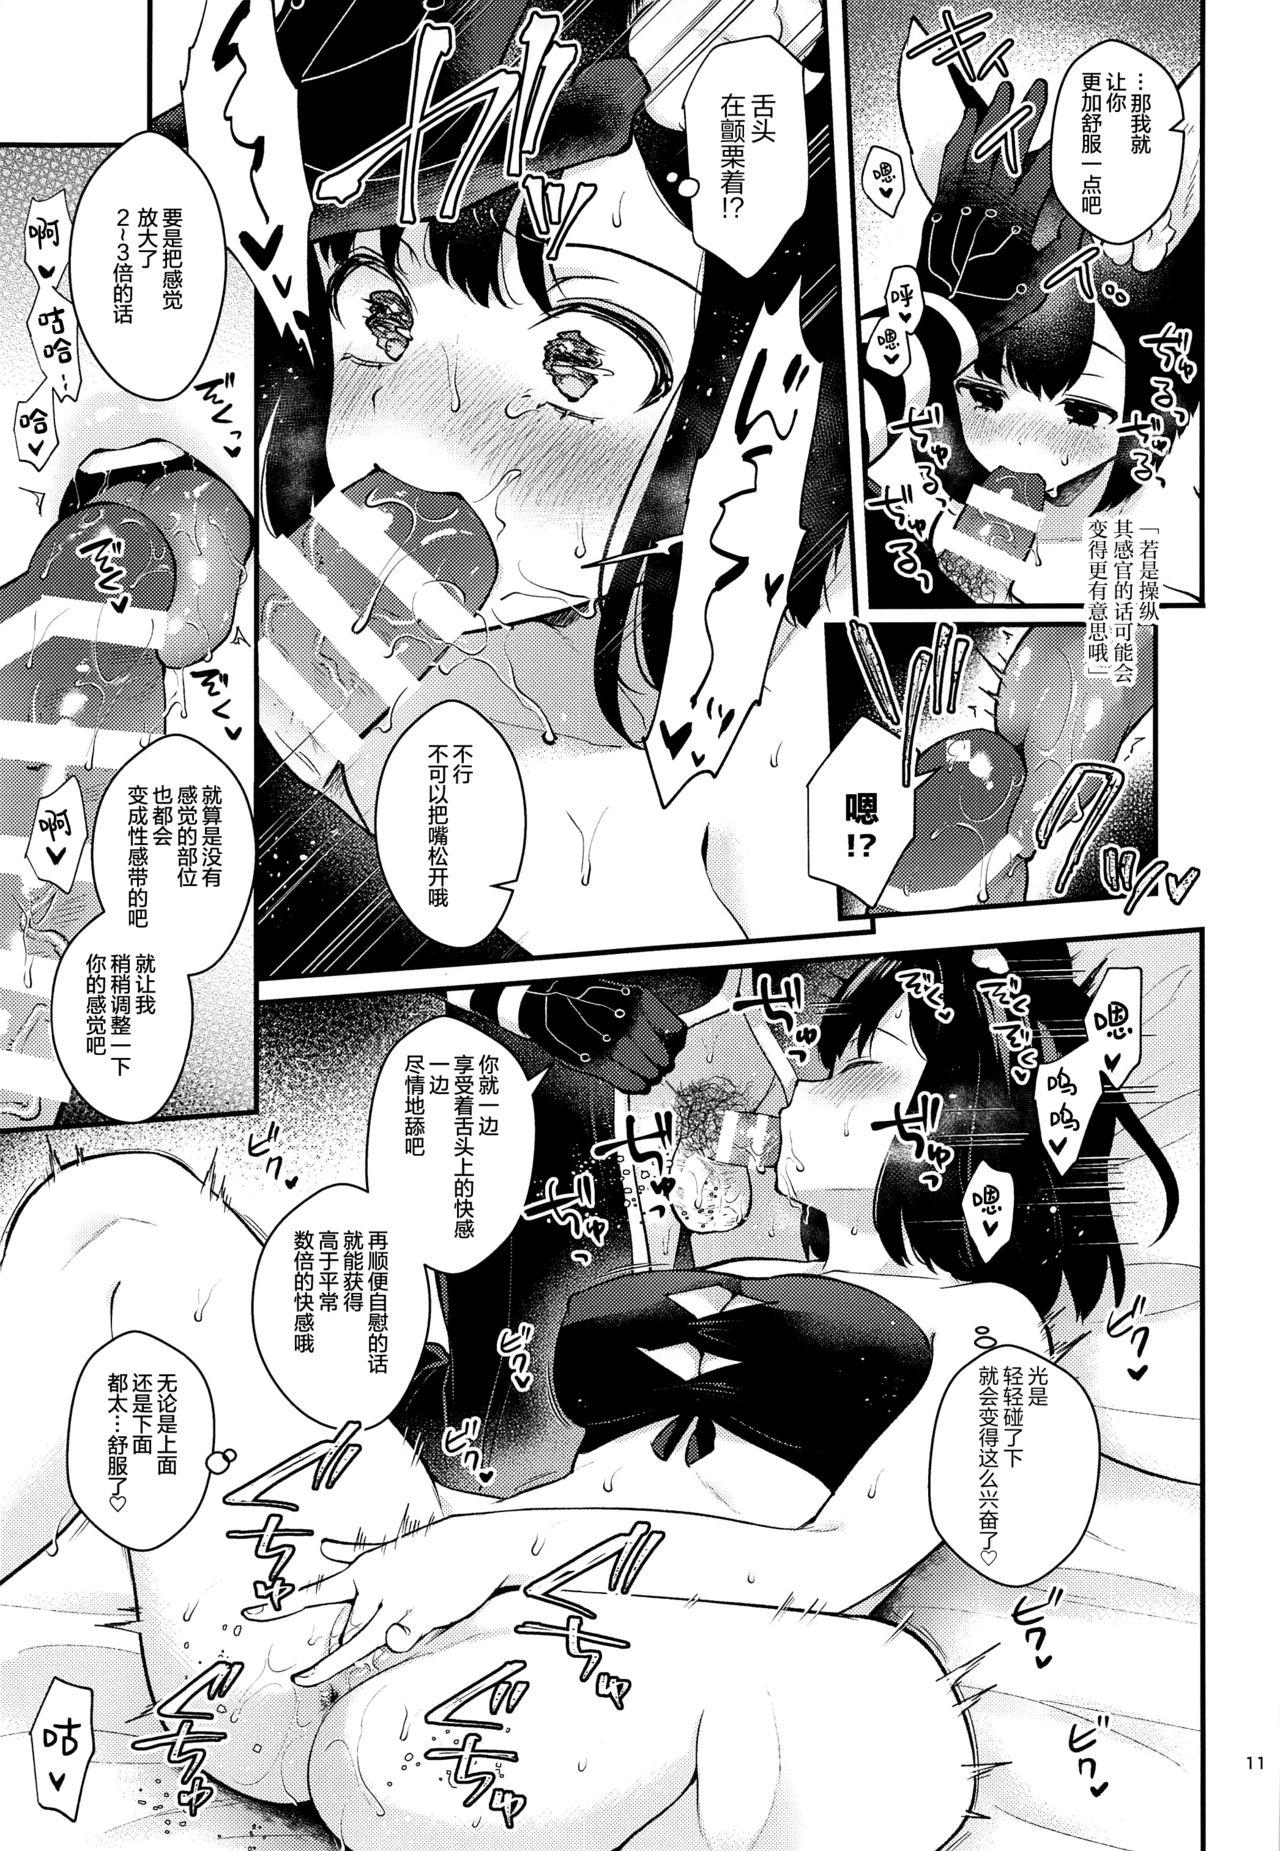 Teenxxx Hound-chan Icha Love Saimin Sex - Etrian odyssey Parody - Page 11